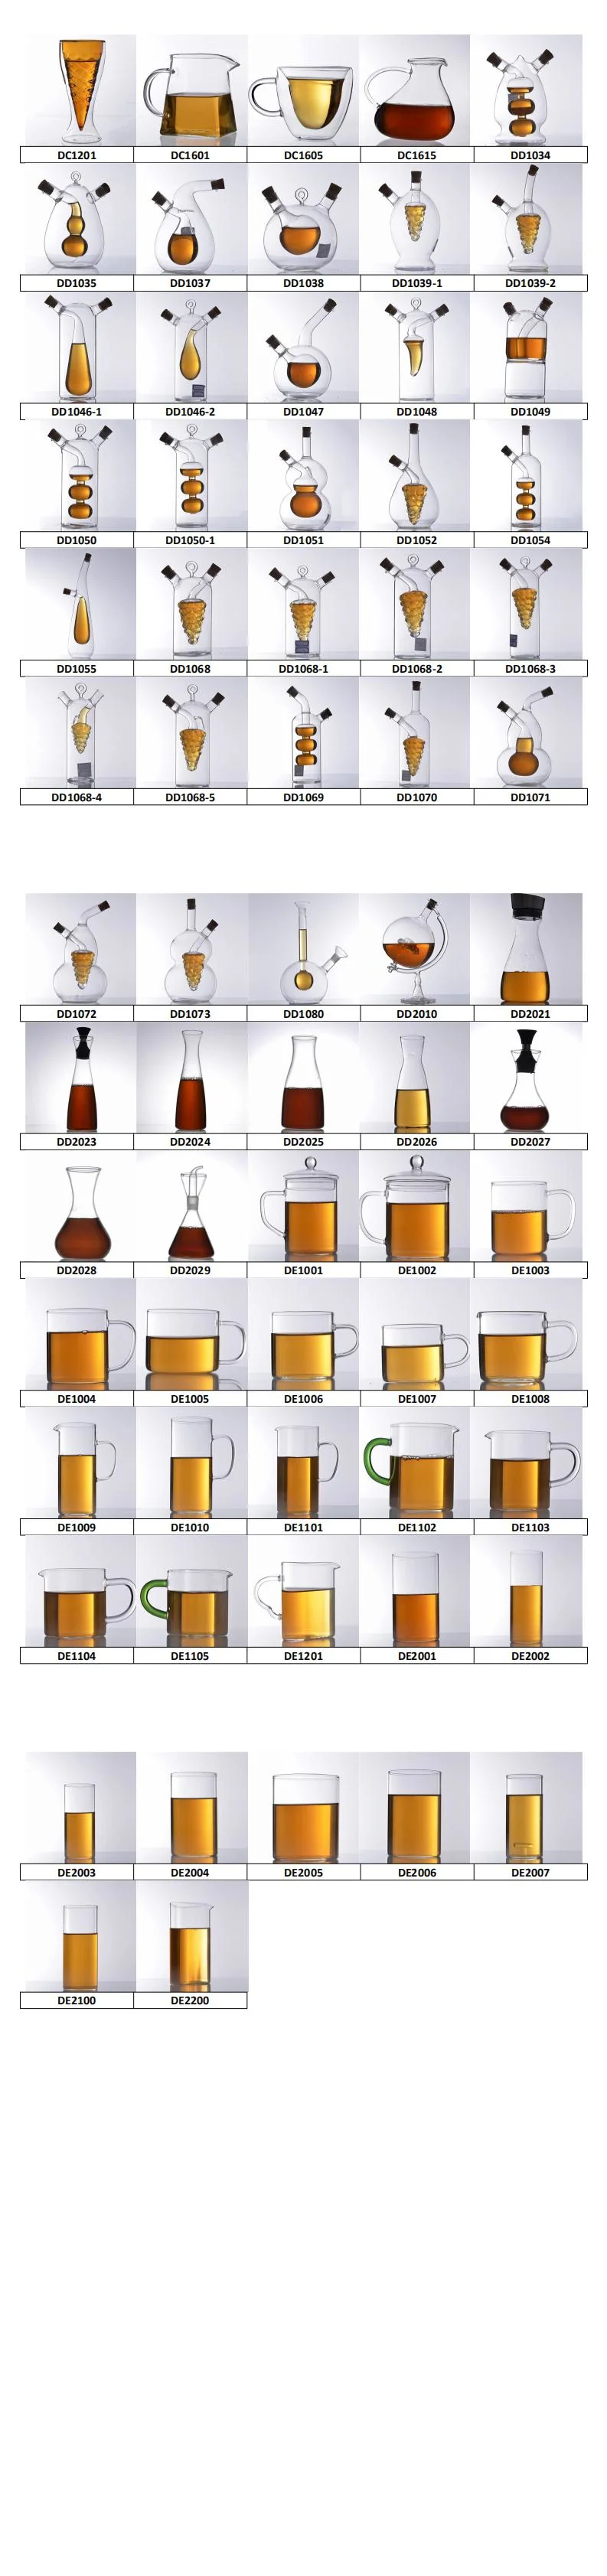 DD2028 Glass Storage Jars and Salt Pepper Shaker and Oil Vinegar Bottles